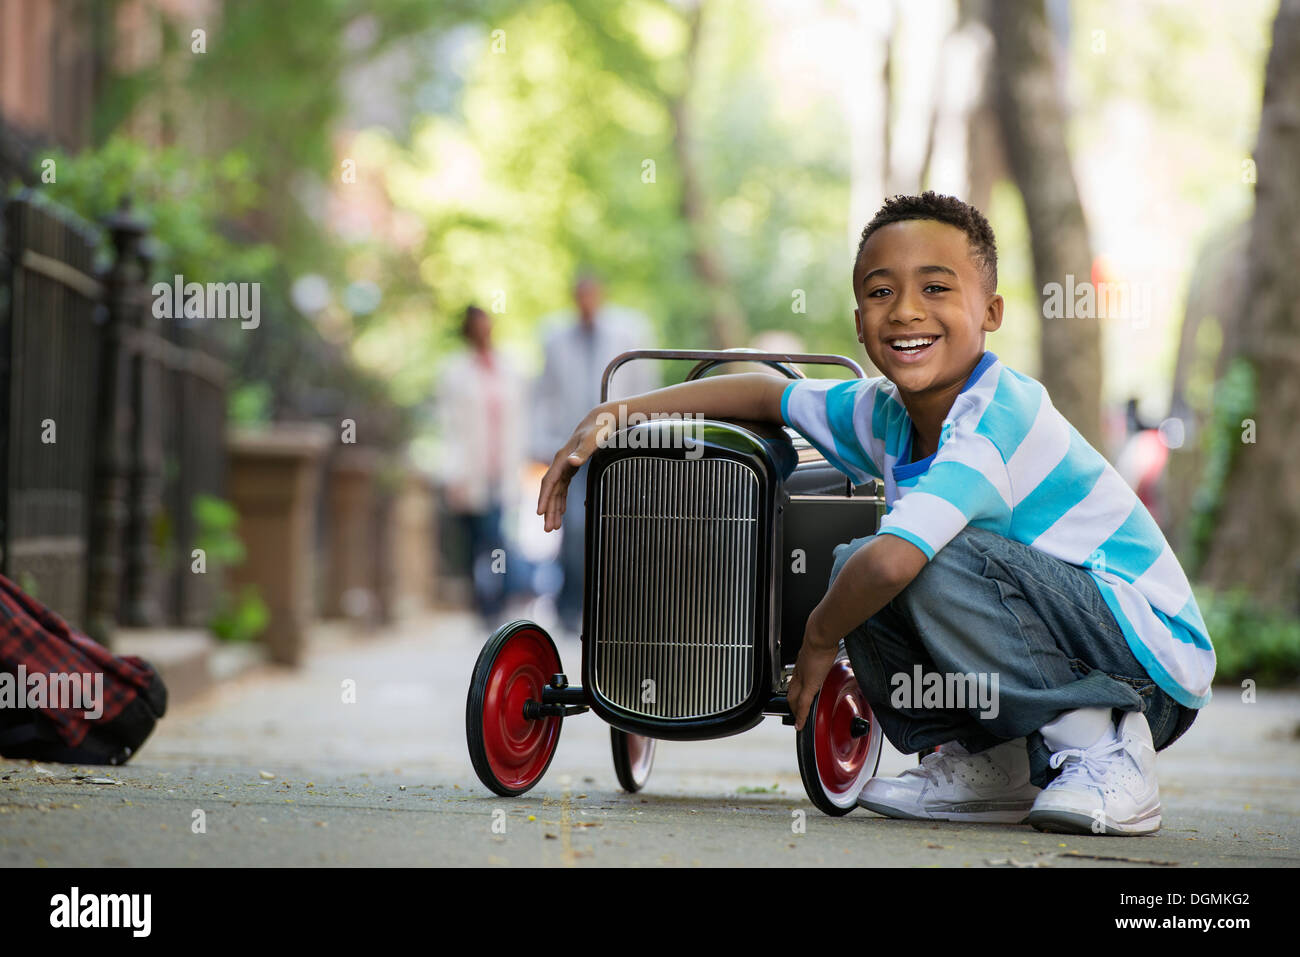 Un joven jugando con un viejo coche de juguete sobre ruedas en una calle de la ciudad. Foto de stock